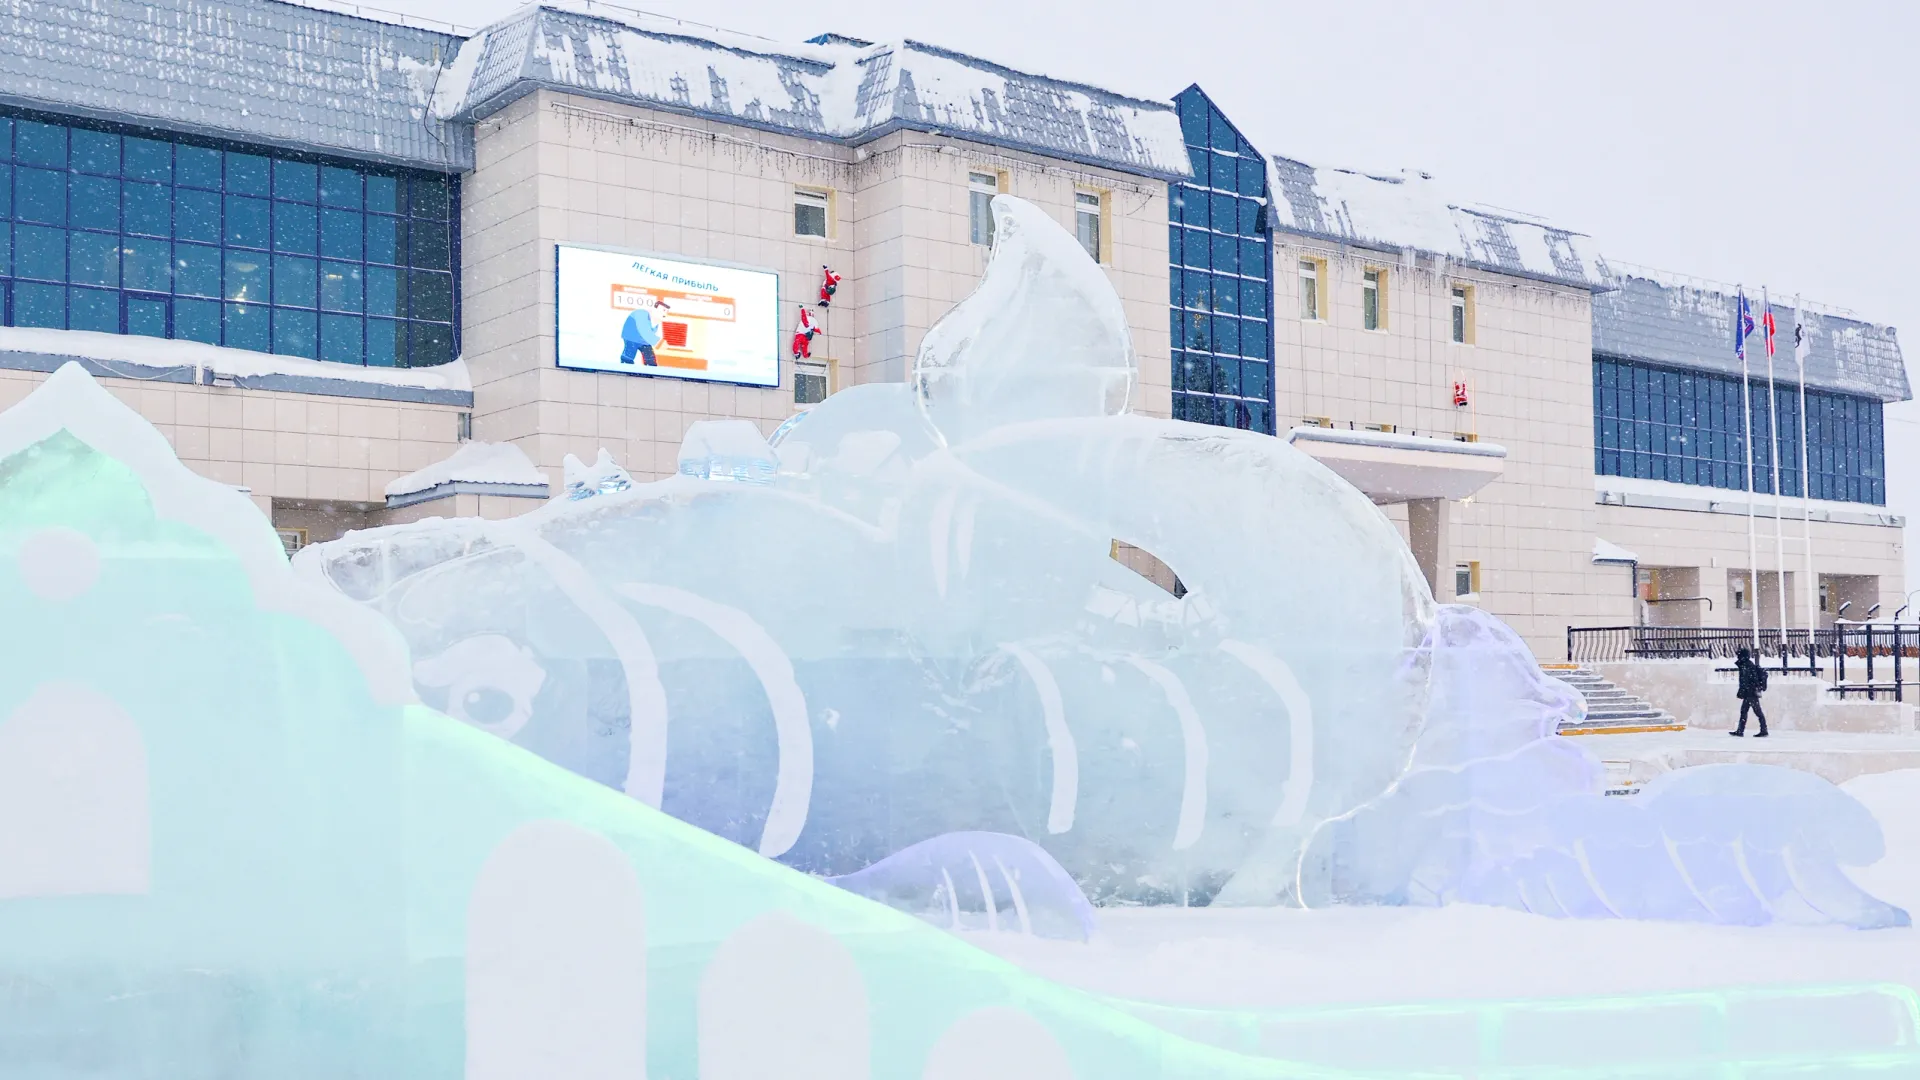 С 19 по 25 февраля в ЯНАО будет проходить Неделя зимних видов спорта. Фото: Андрей Ткачёв / "Ямал-Медиа"